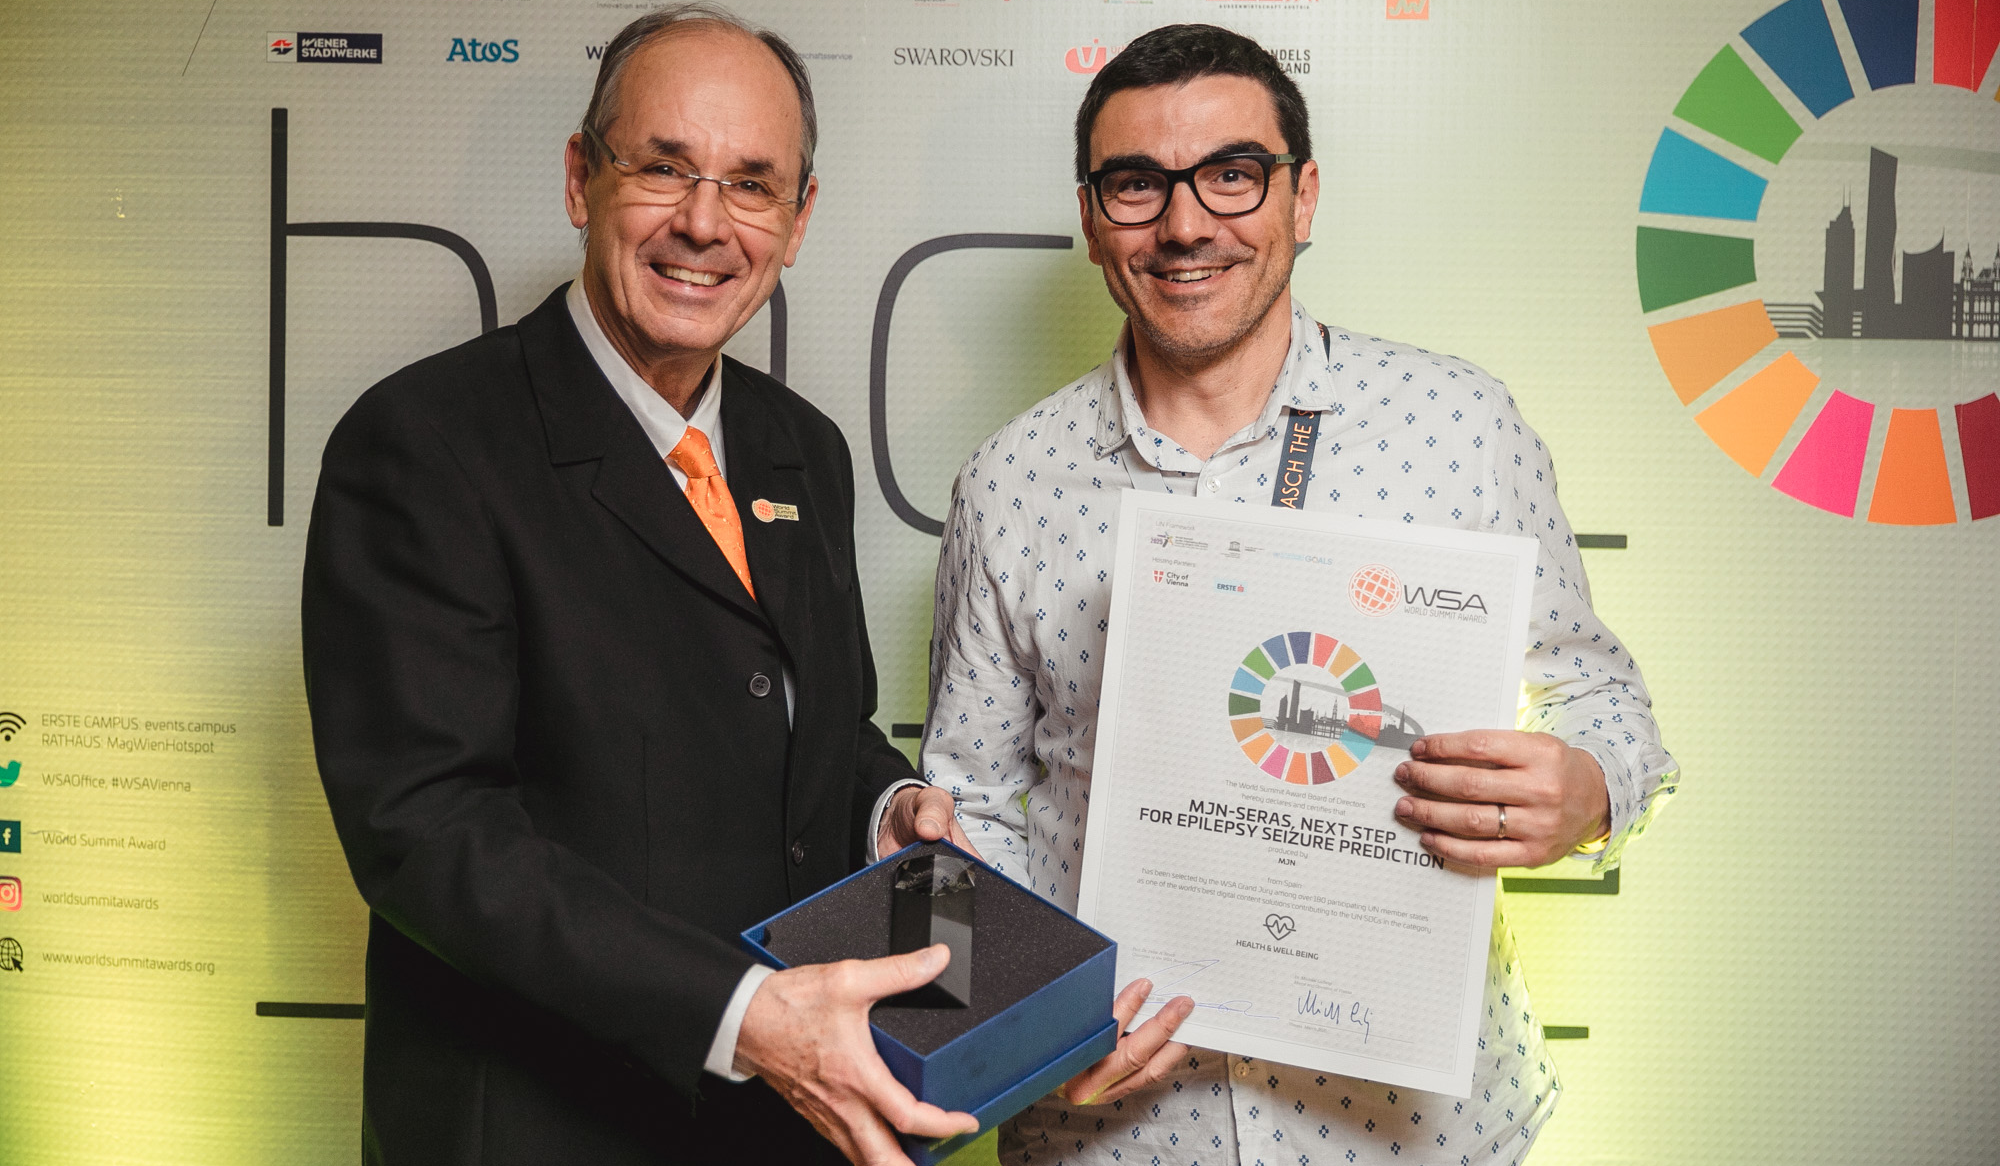 mjn-neuro obtiene el premio Global Champion organizado por World Summit Awards para nuestra solución de ayuda a personas con epilepsia